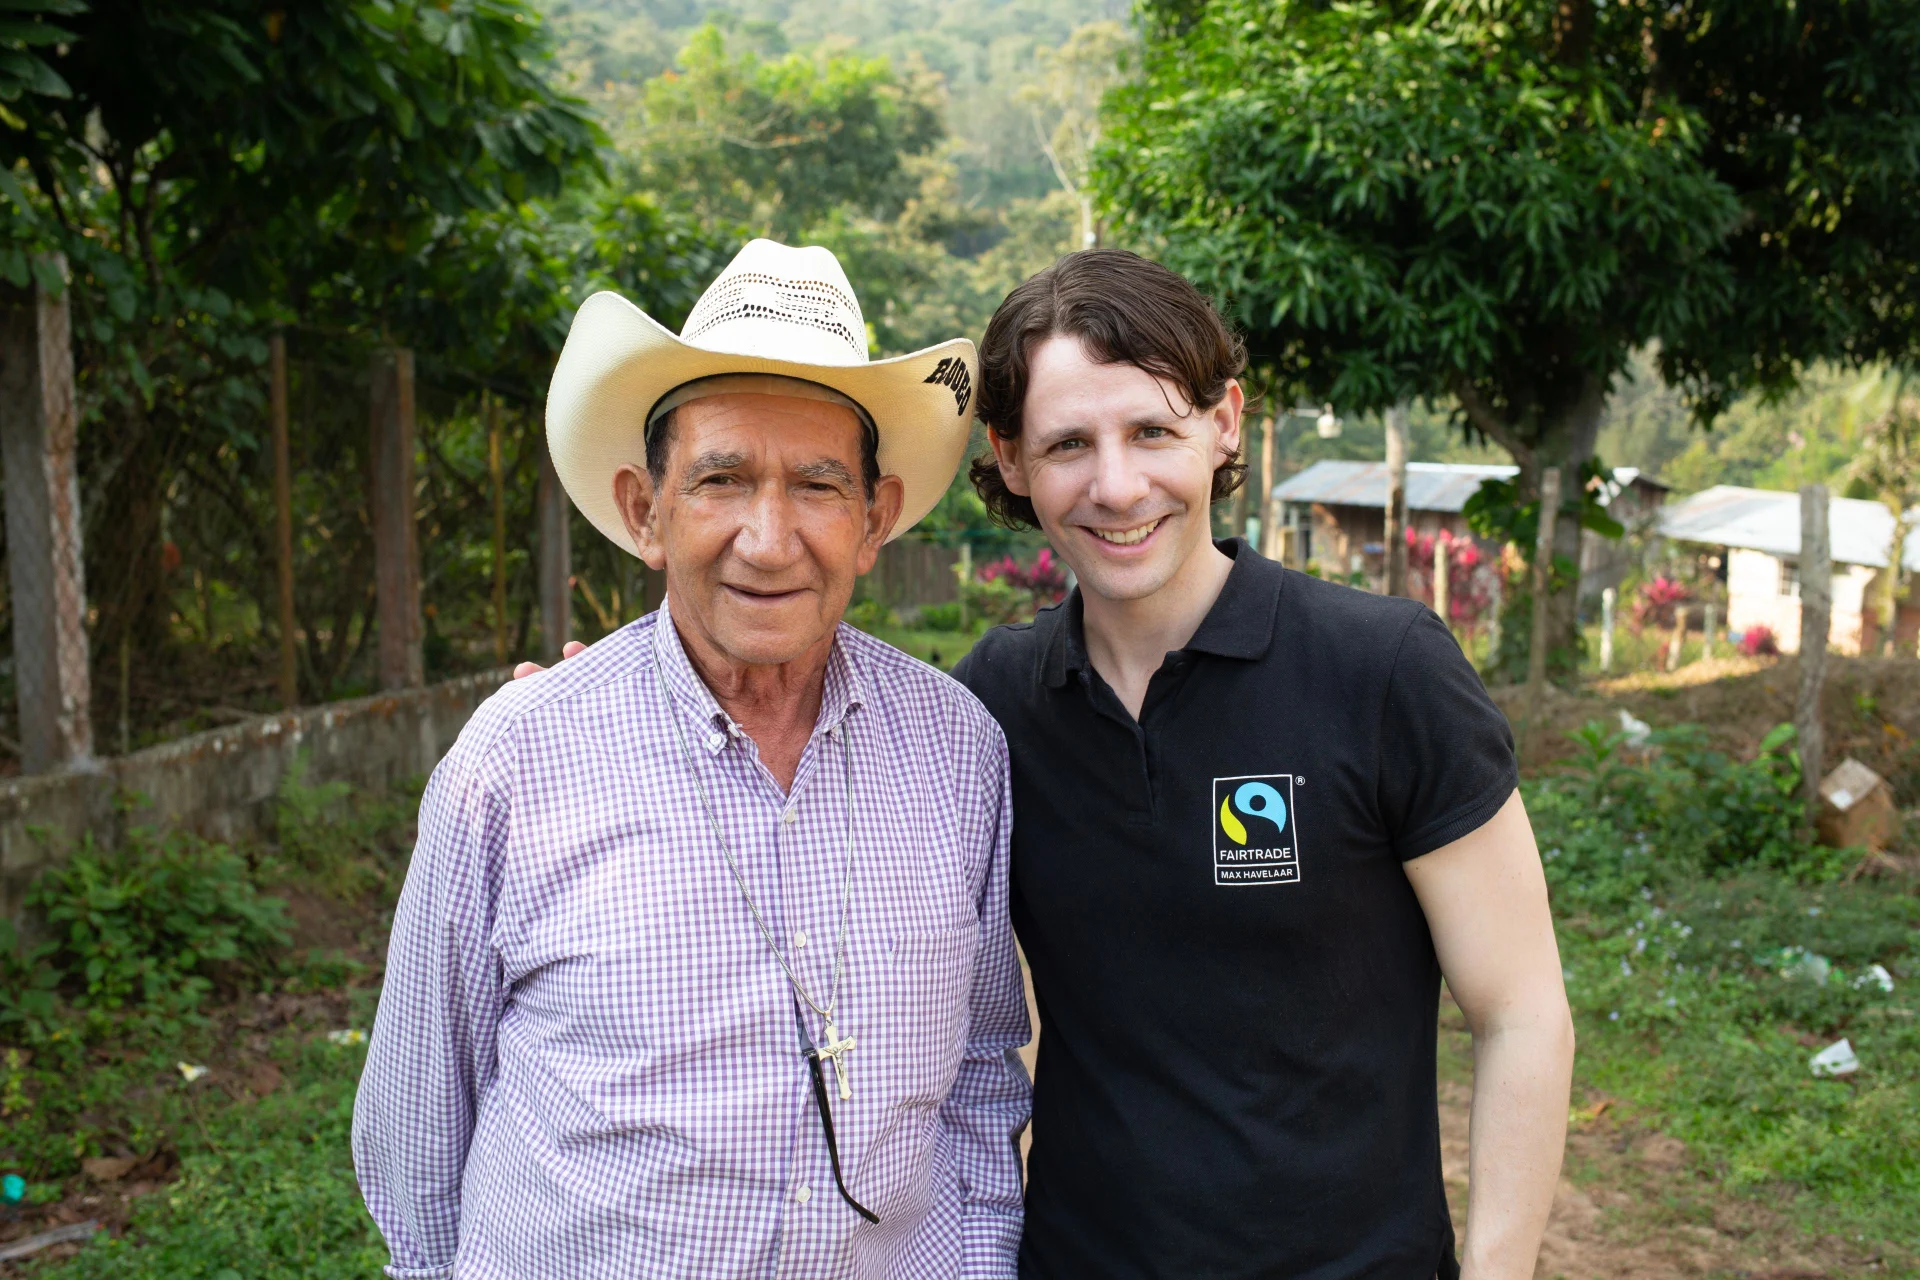 Una foto di un agricoltore latinoamericano accanto a una collaboratrice di Fairtrade.